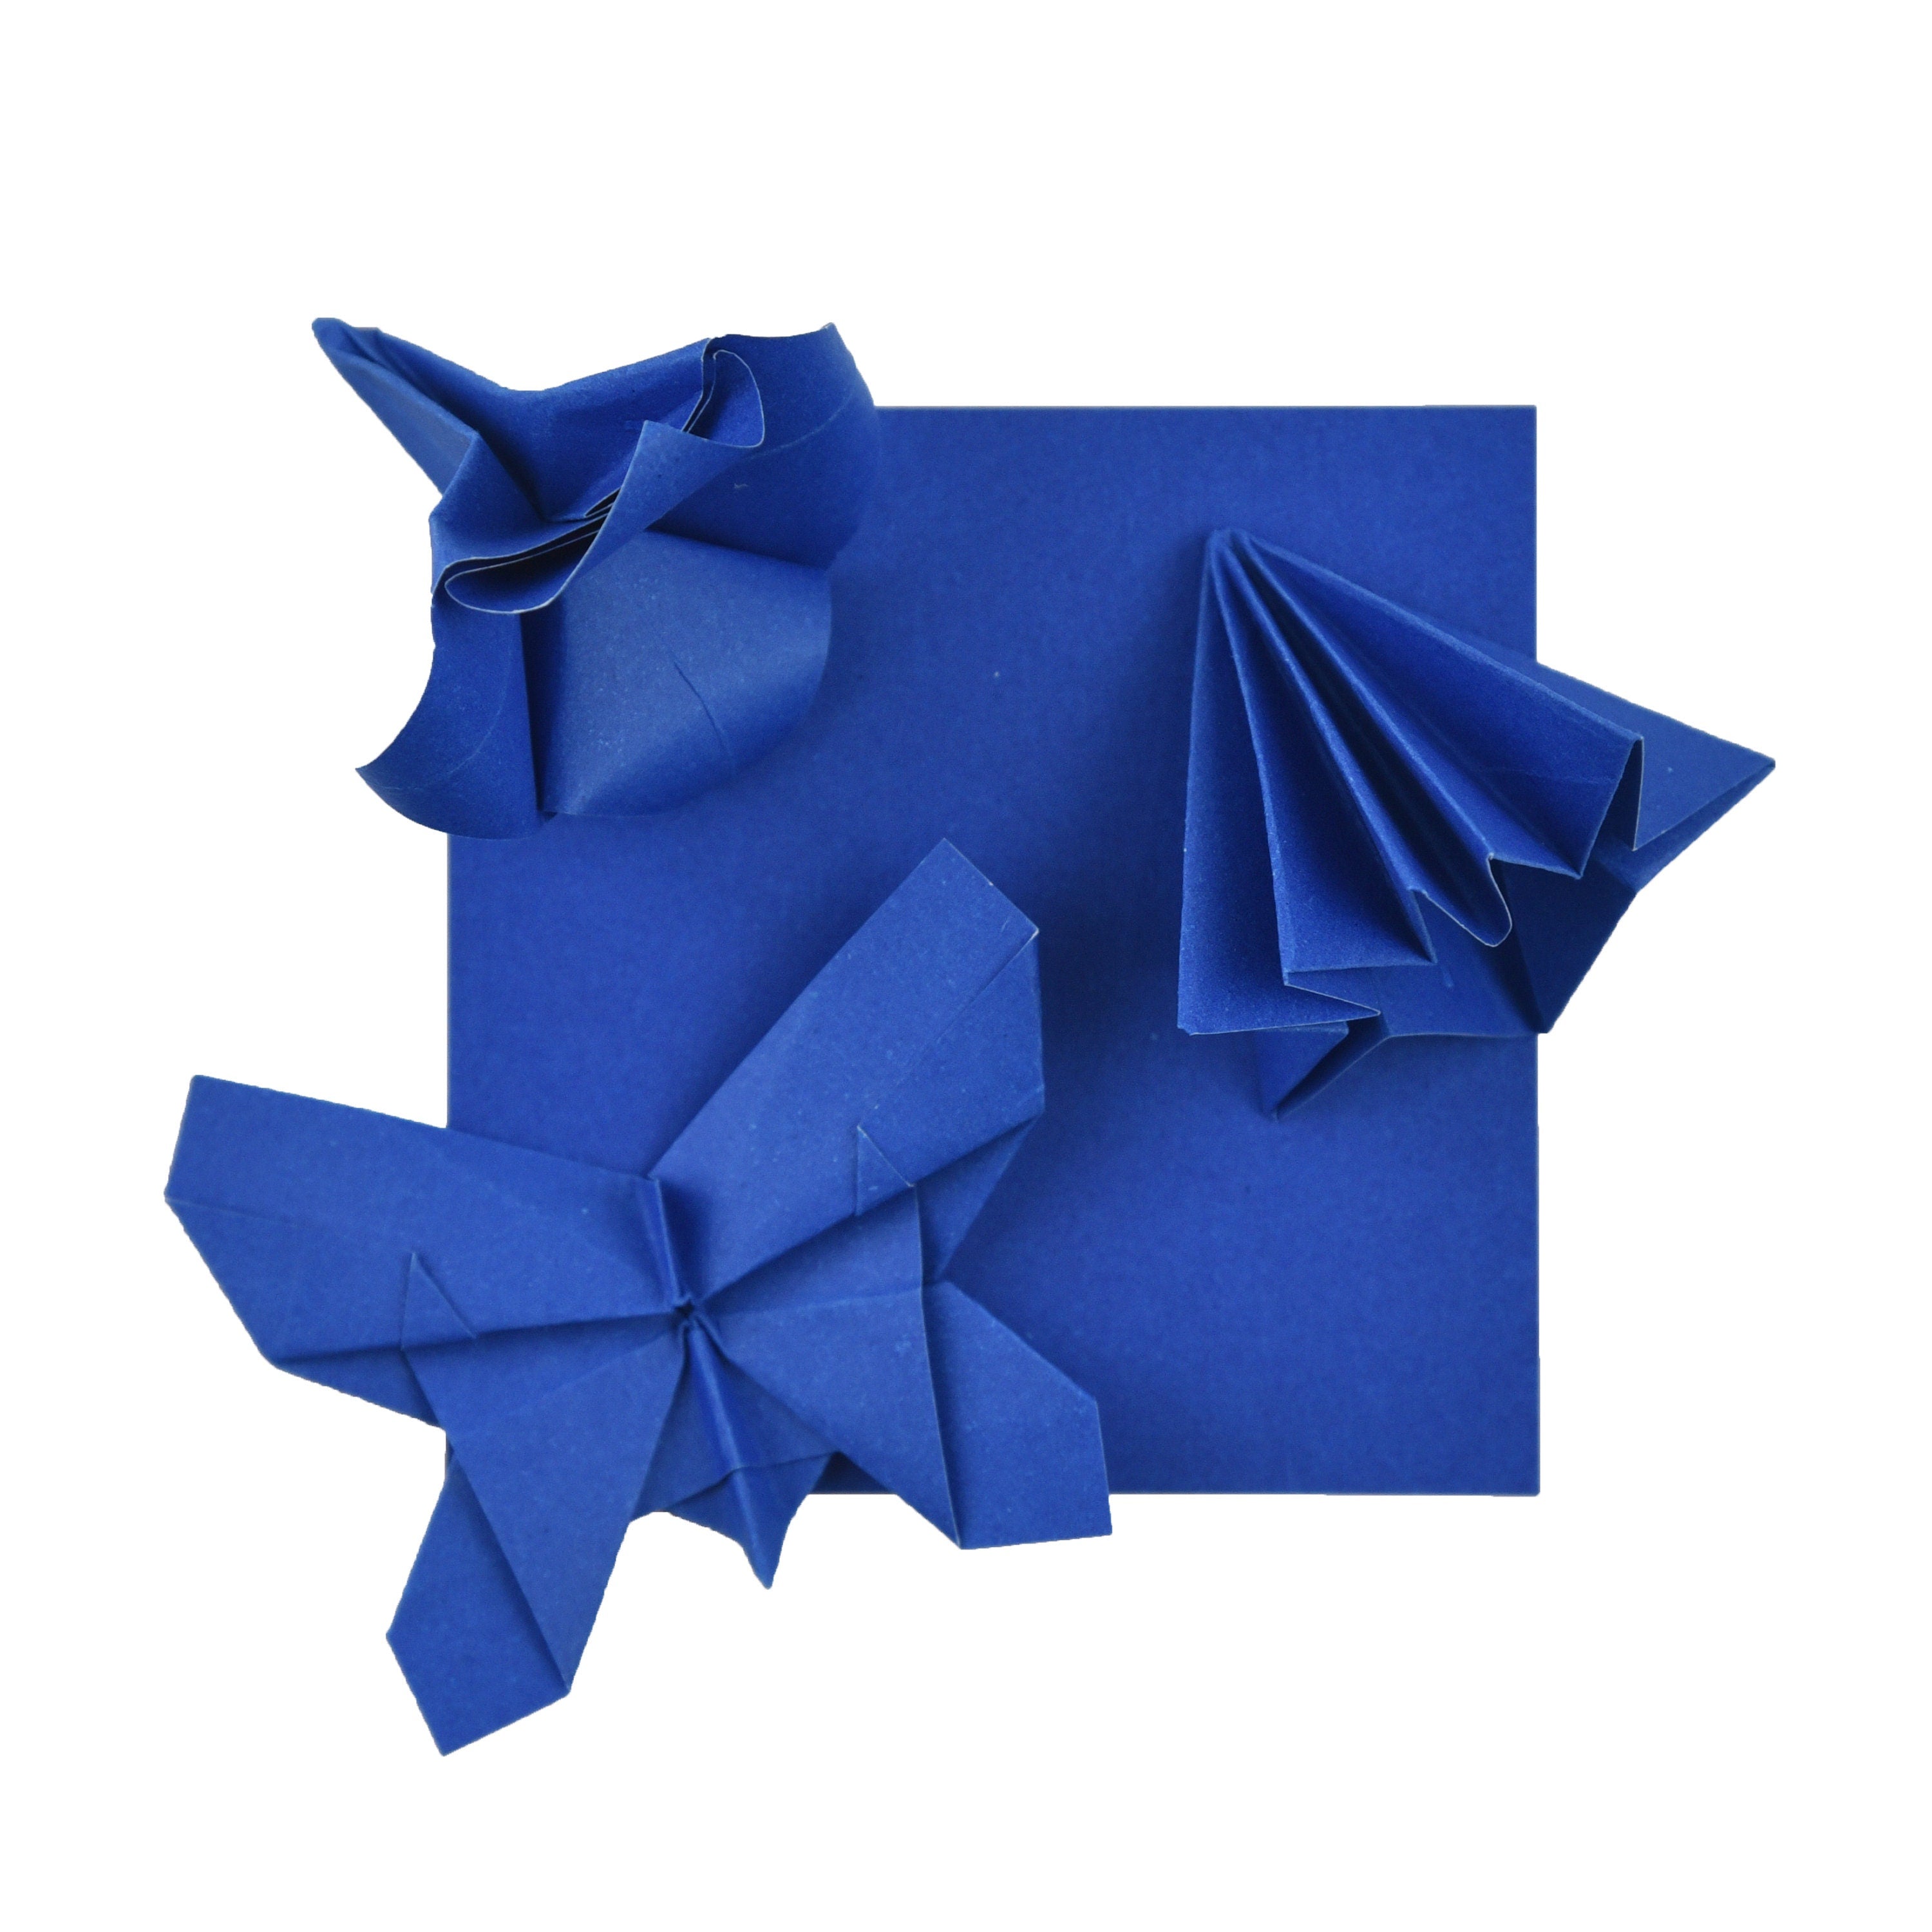 100 fogli di carta origami - 3x3 pollici - Confezione di carta quadrata per piegare, gru origami e decorazioni - S20